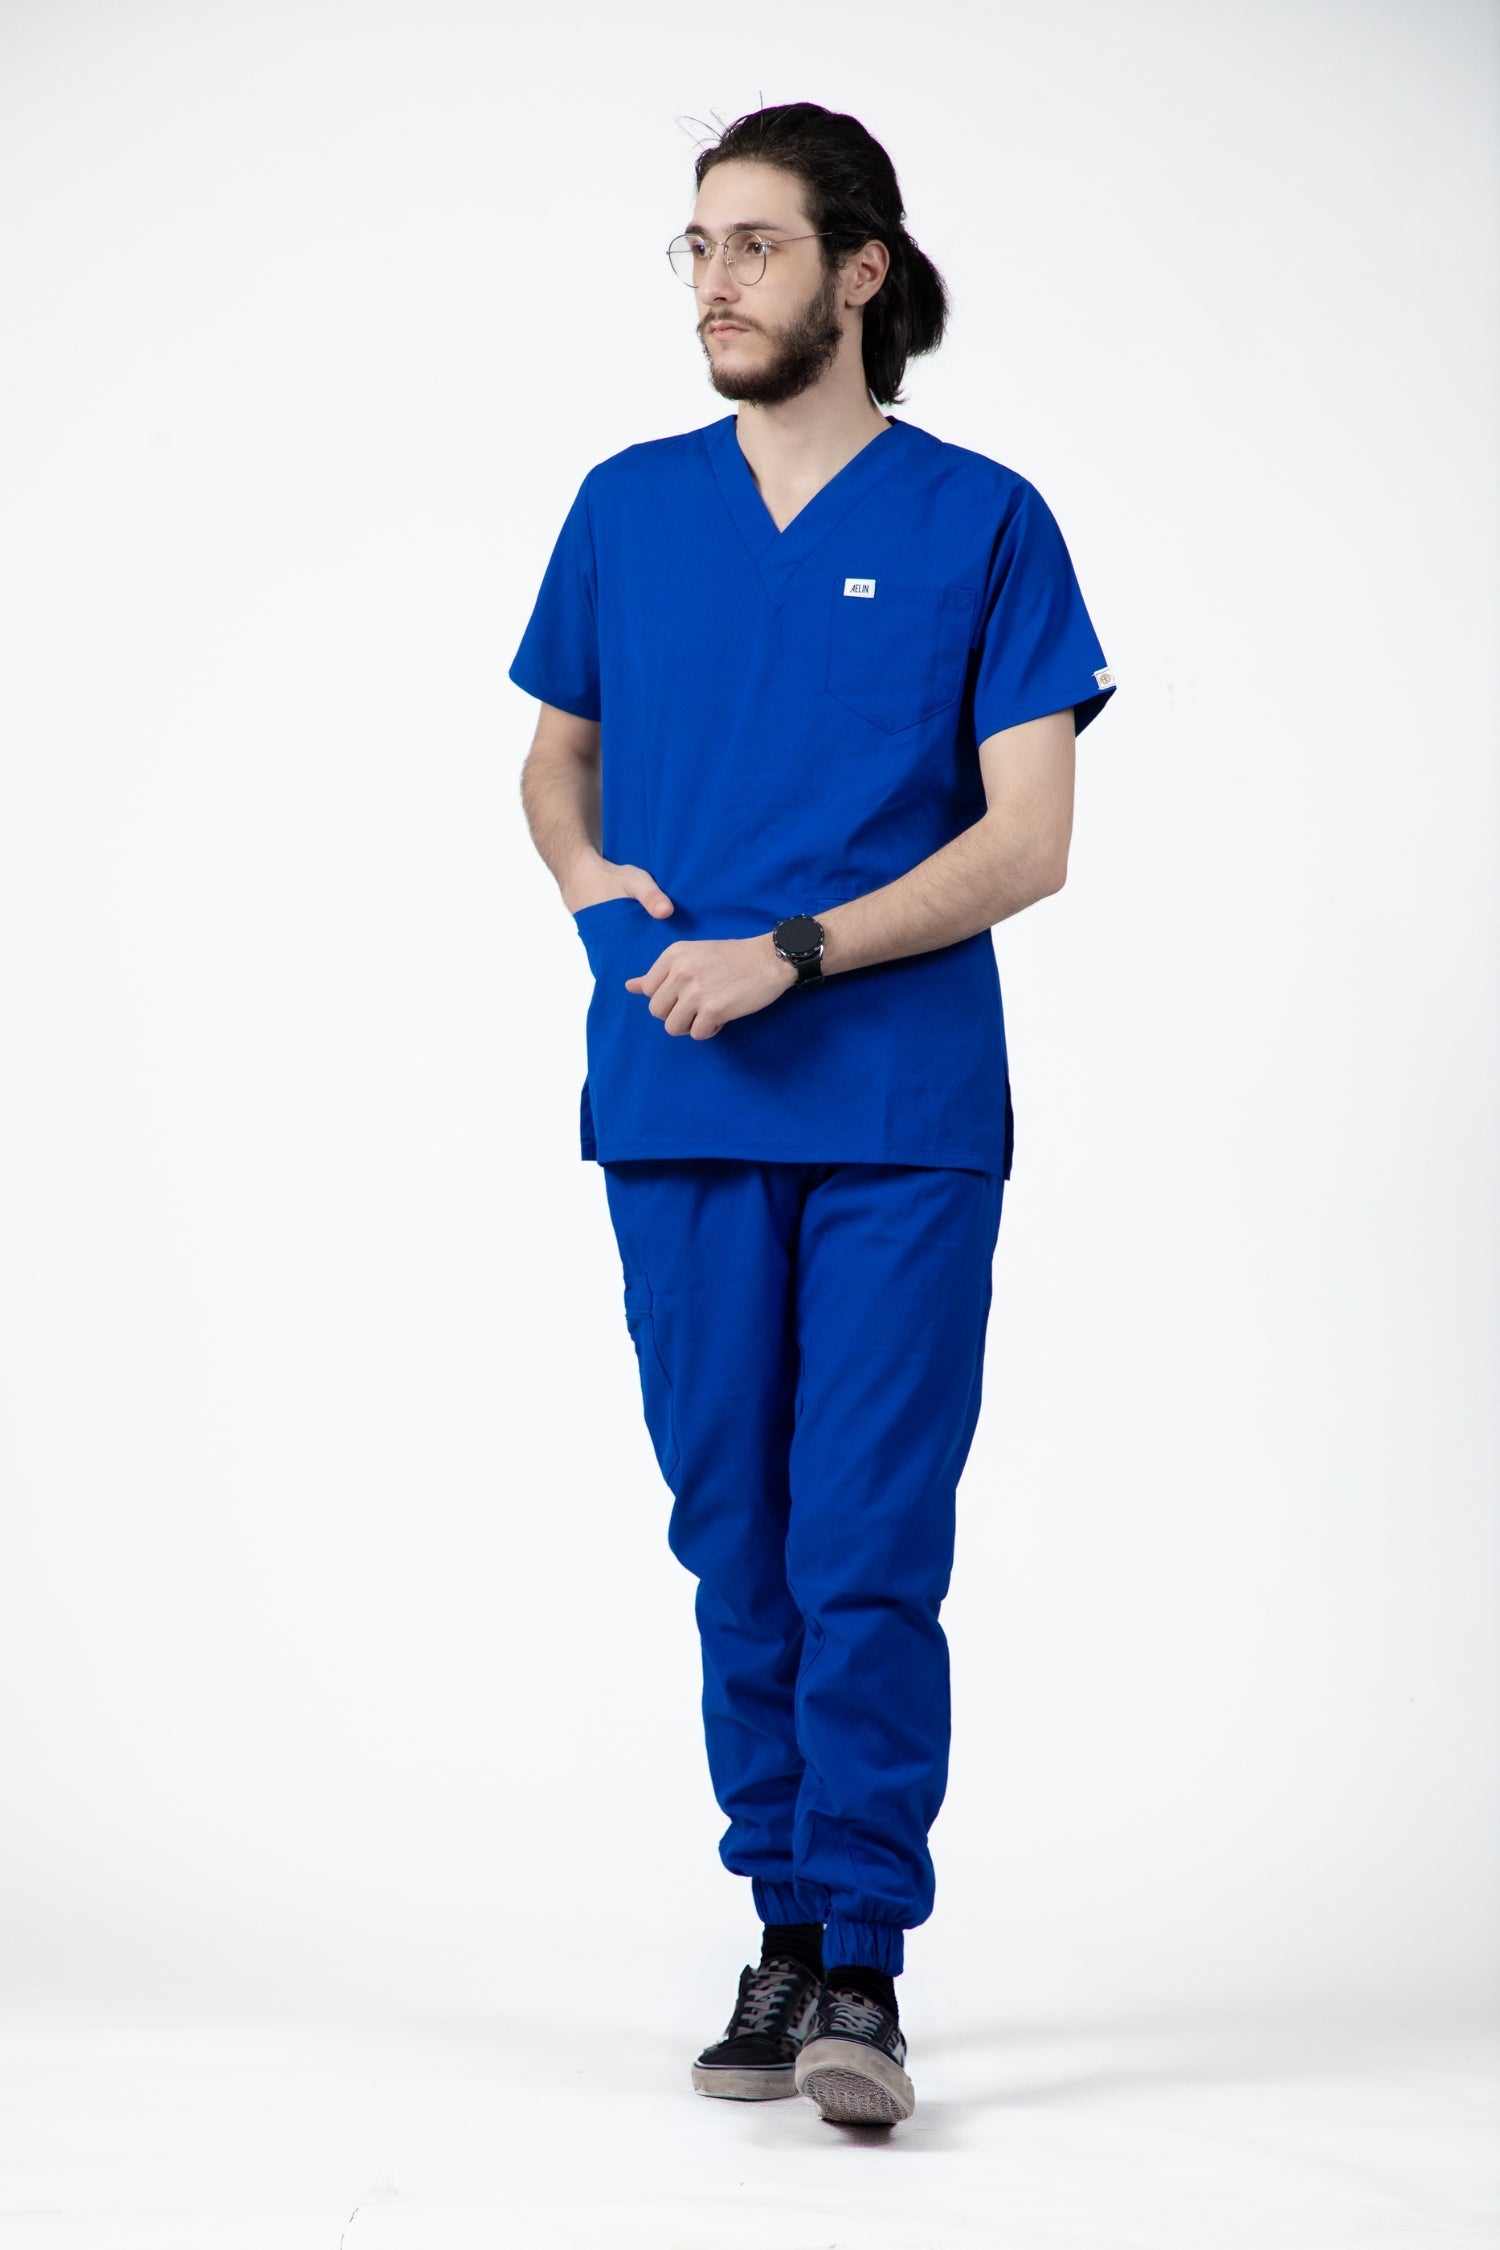 Homme en tunique médicale bleu royal slimfit portant des tenues médicales